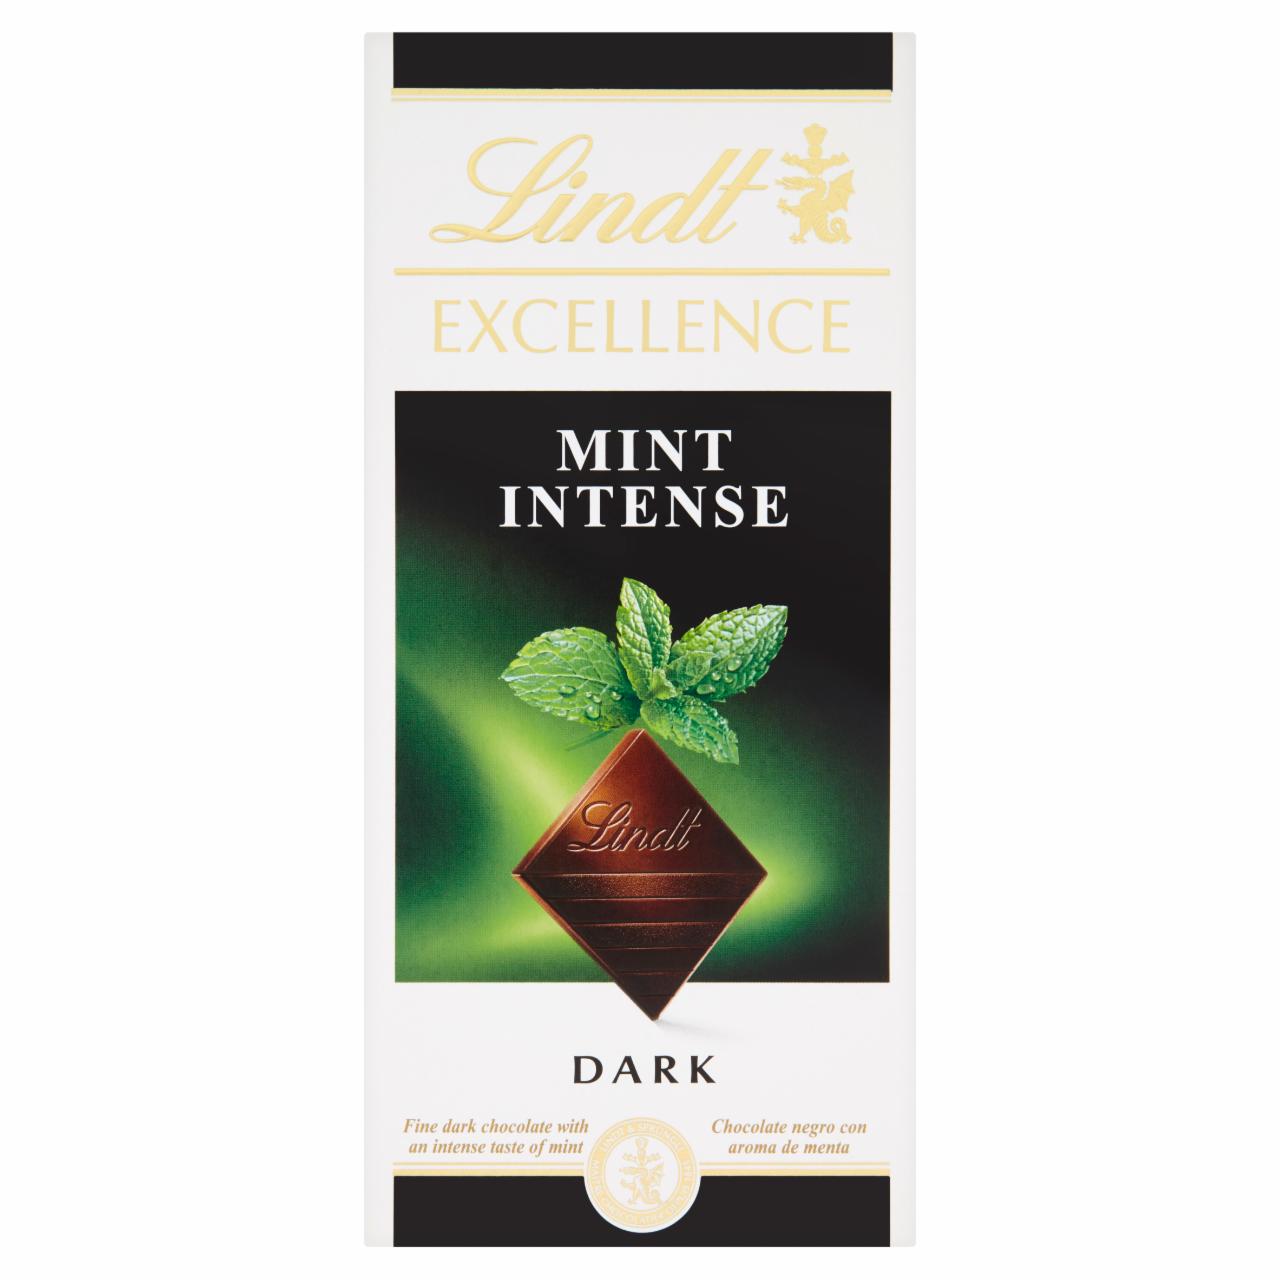 Képek - Lindt Excellence Intense Mint menta ízesítésű keserű csokoládé 100 g